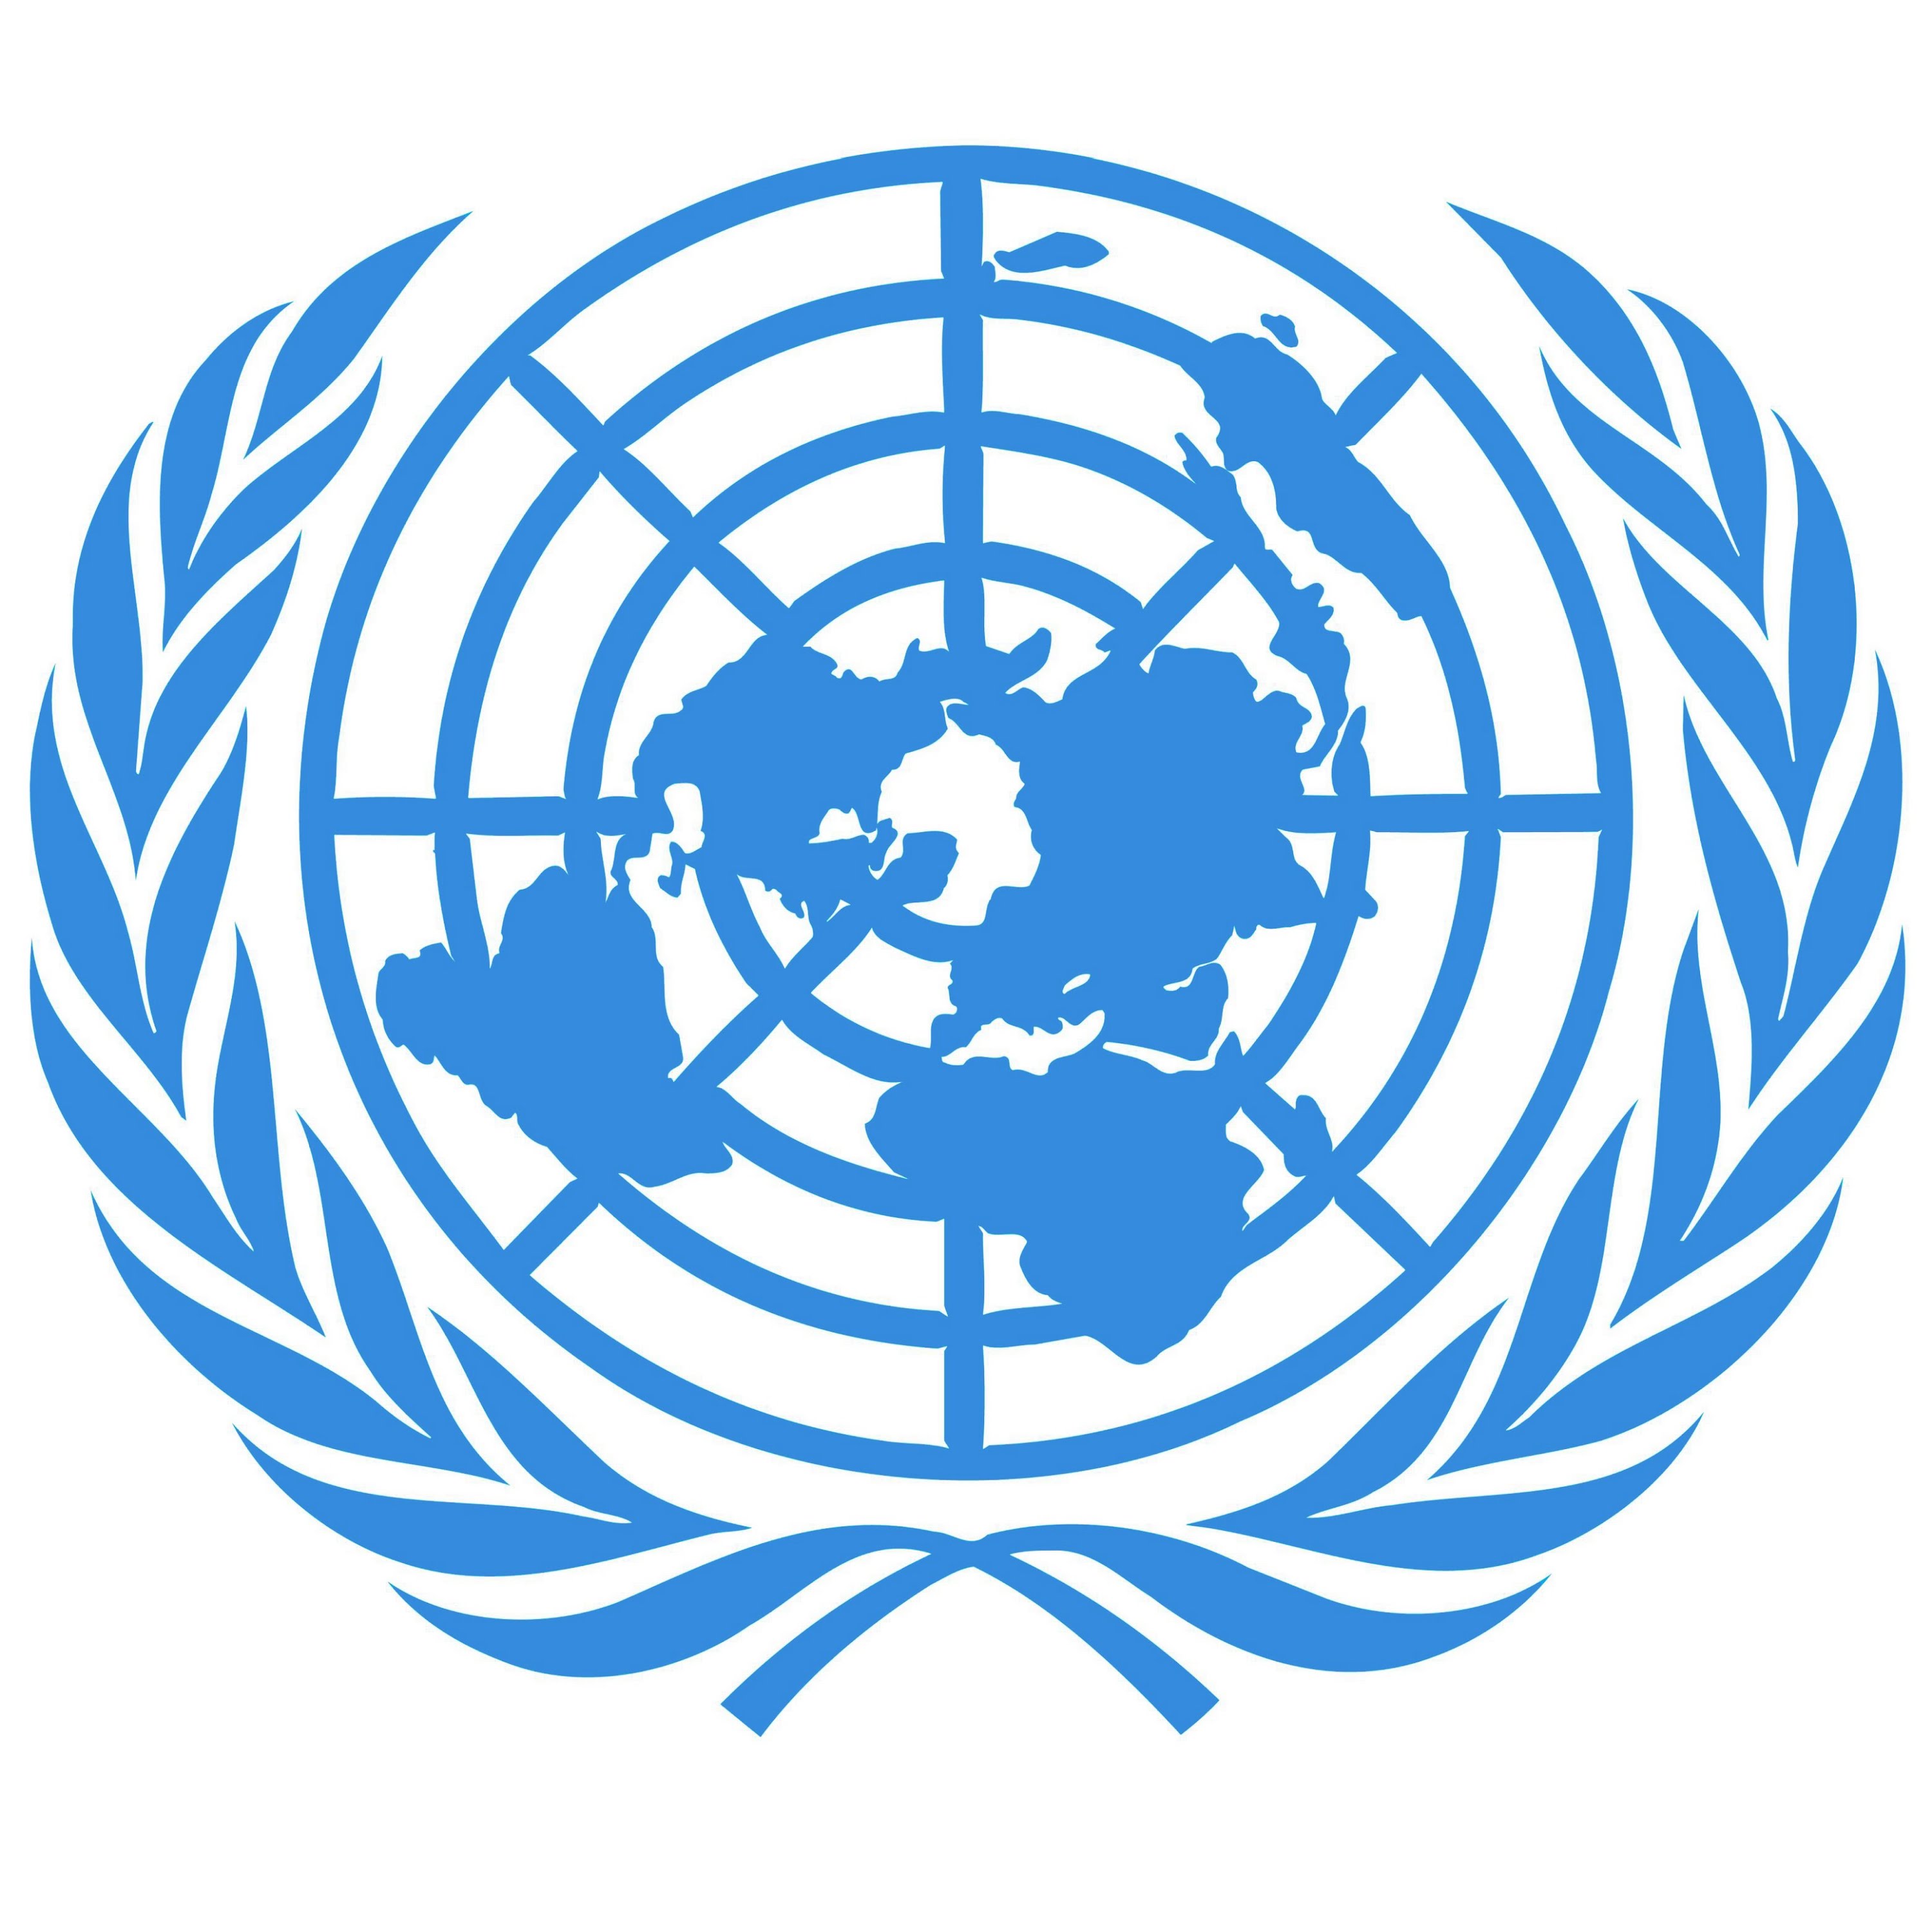 Traite des êtres humains : Les trafiquants tirent profit des fragilités des victimes via les TIC, selon le Secrétariat général de l’ONU